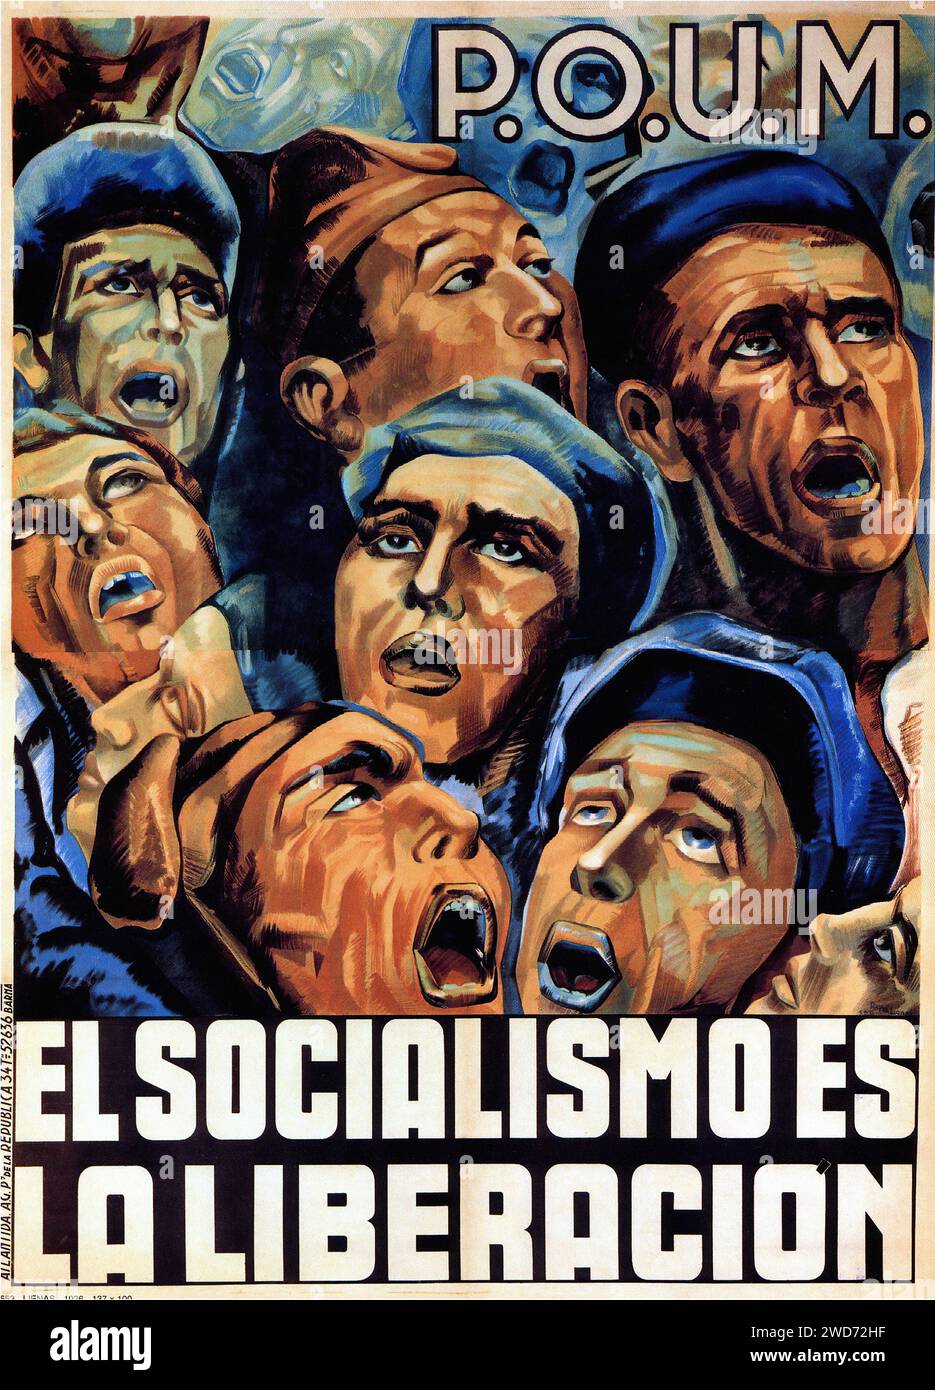 El socialismo es la liberación. Der Sozialismus ist die Befreiung. Das Bild ist ein Propagandaplakat von 1936 für die Arbeiterpartei der marxistischen Vereinigung (POUM). Es zeigt eine Gruppe von Gesichtern, die in verschiedenen Ausdrucksformen von Hoffnung und Entschlossenheit nach oben schauen, in einem realistischen, aber dramatischen Stil mit warmen Tönen. Der Text "El socialismo es la liberación" dominiert den unteren Bereich und behauptet den Sozialismus als Weg zur Freiheit. Das Kunstwerk spiegelt den sozialrealistischen Stil wider, der in der politischen Propaganda dieser Zeit populär war und entworfen wurde, um mit der Arbeiterklasse Resonanz zu finden und Solidarität zu inspirieren Stockfoto